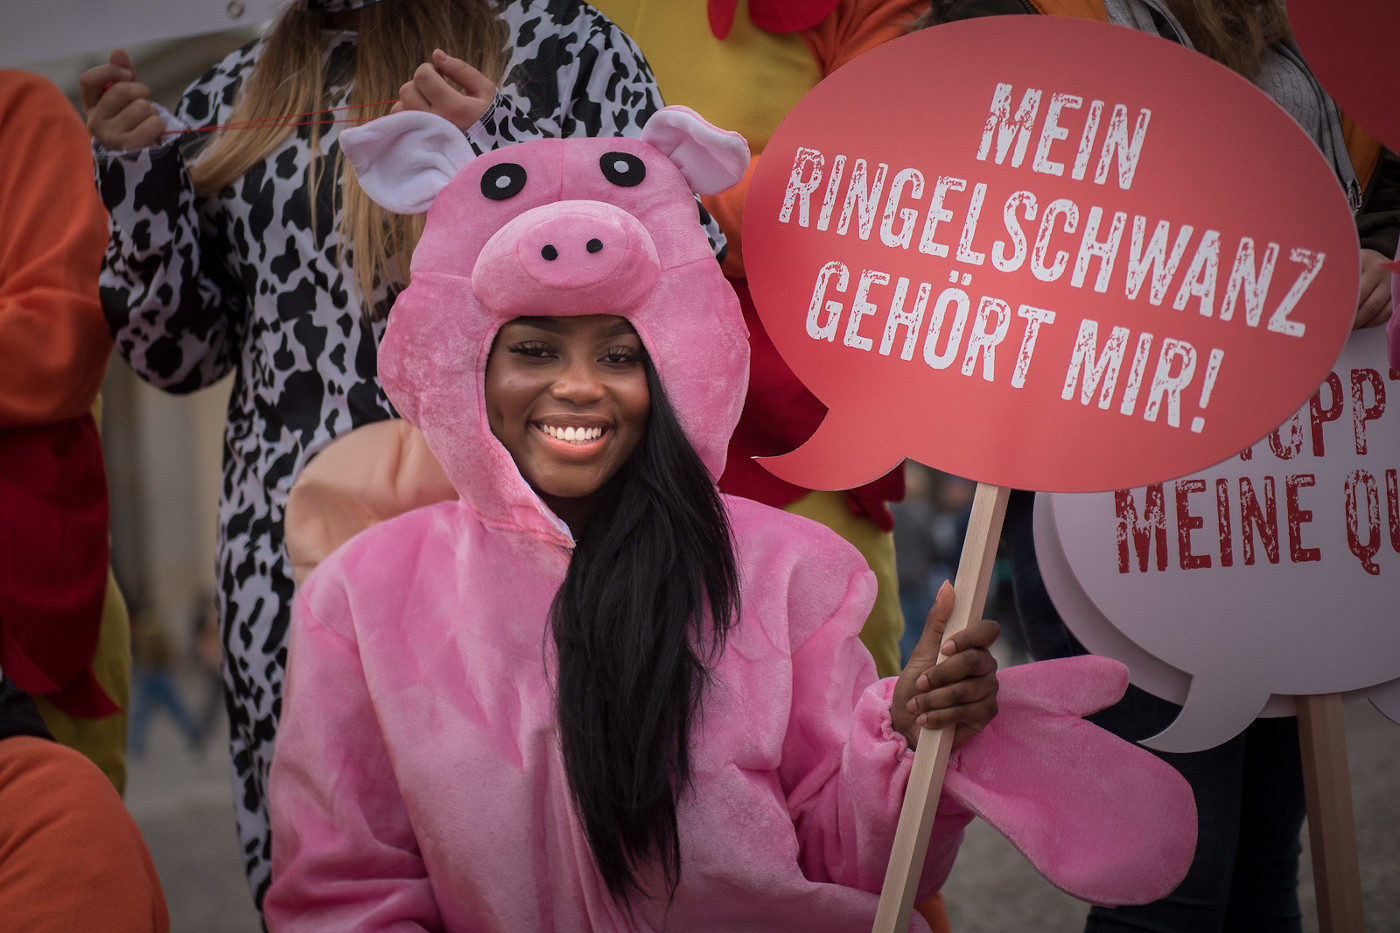 Eine Campact-Unterstützerin protestiert im Schweinskostüm gegen das Tierwohllabel. Sie hält ein Schild mit der Aufschrift "Mein Ringelschwanz gehört mir"."